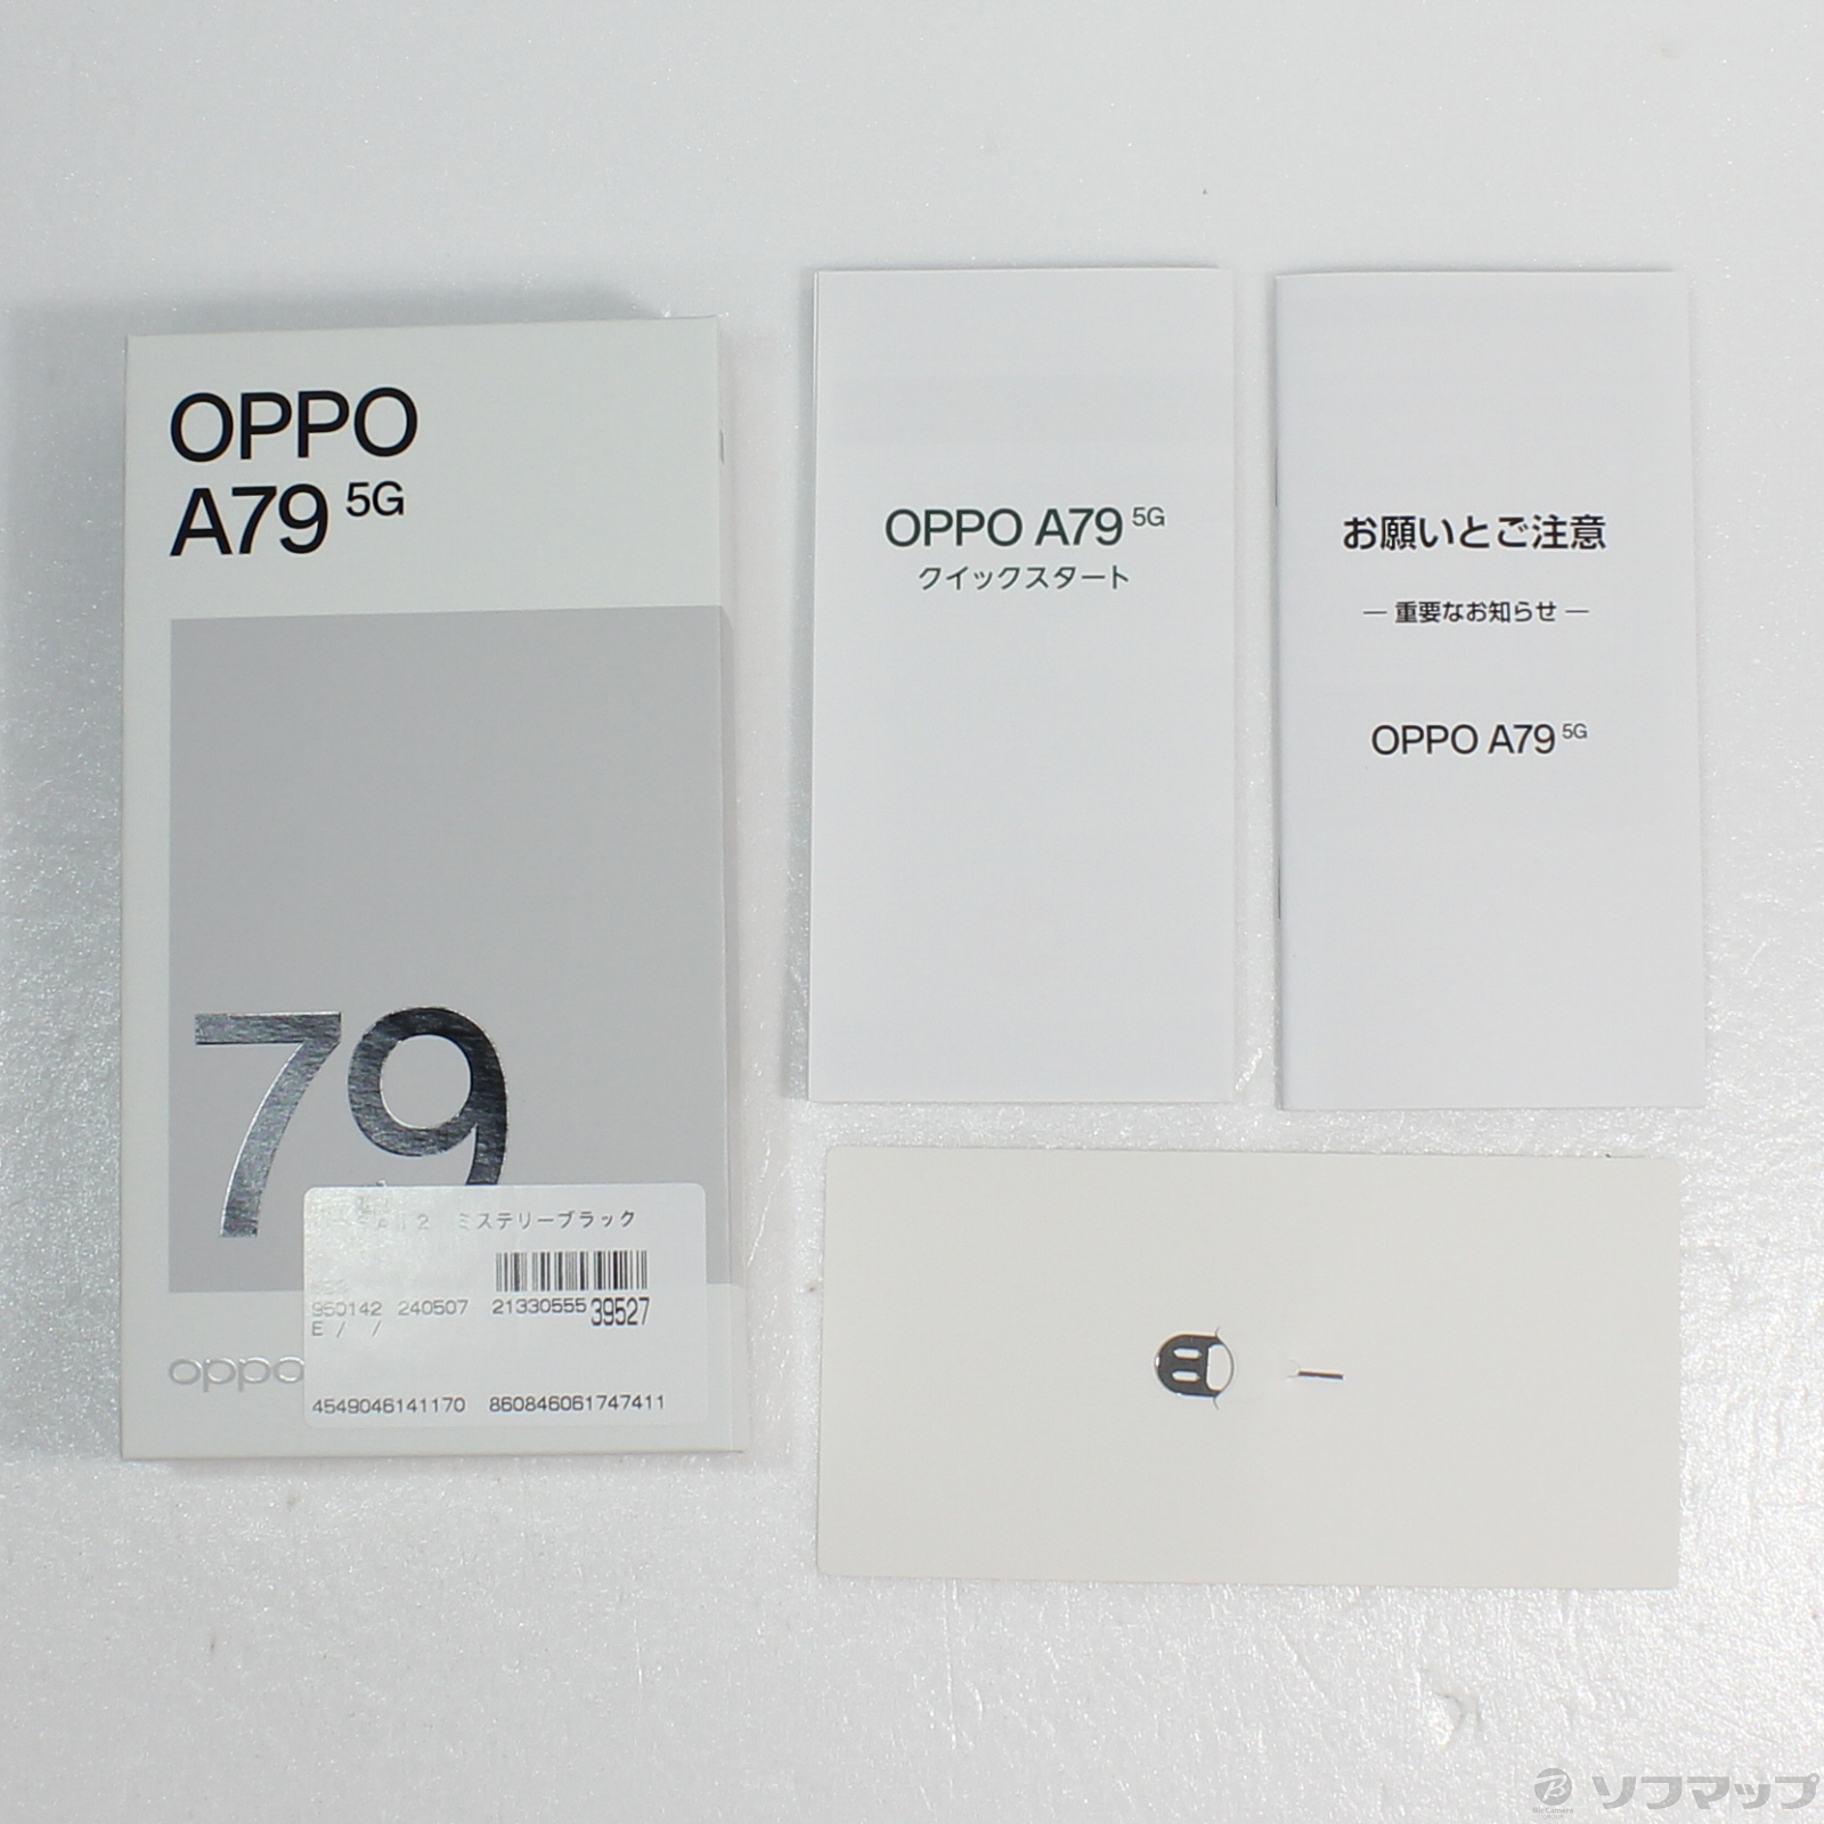 OPPO オッポ A79 5G Y! mobile版 128GB ミステリーブラック SIMフリー - スマホ